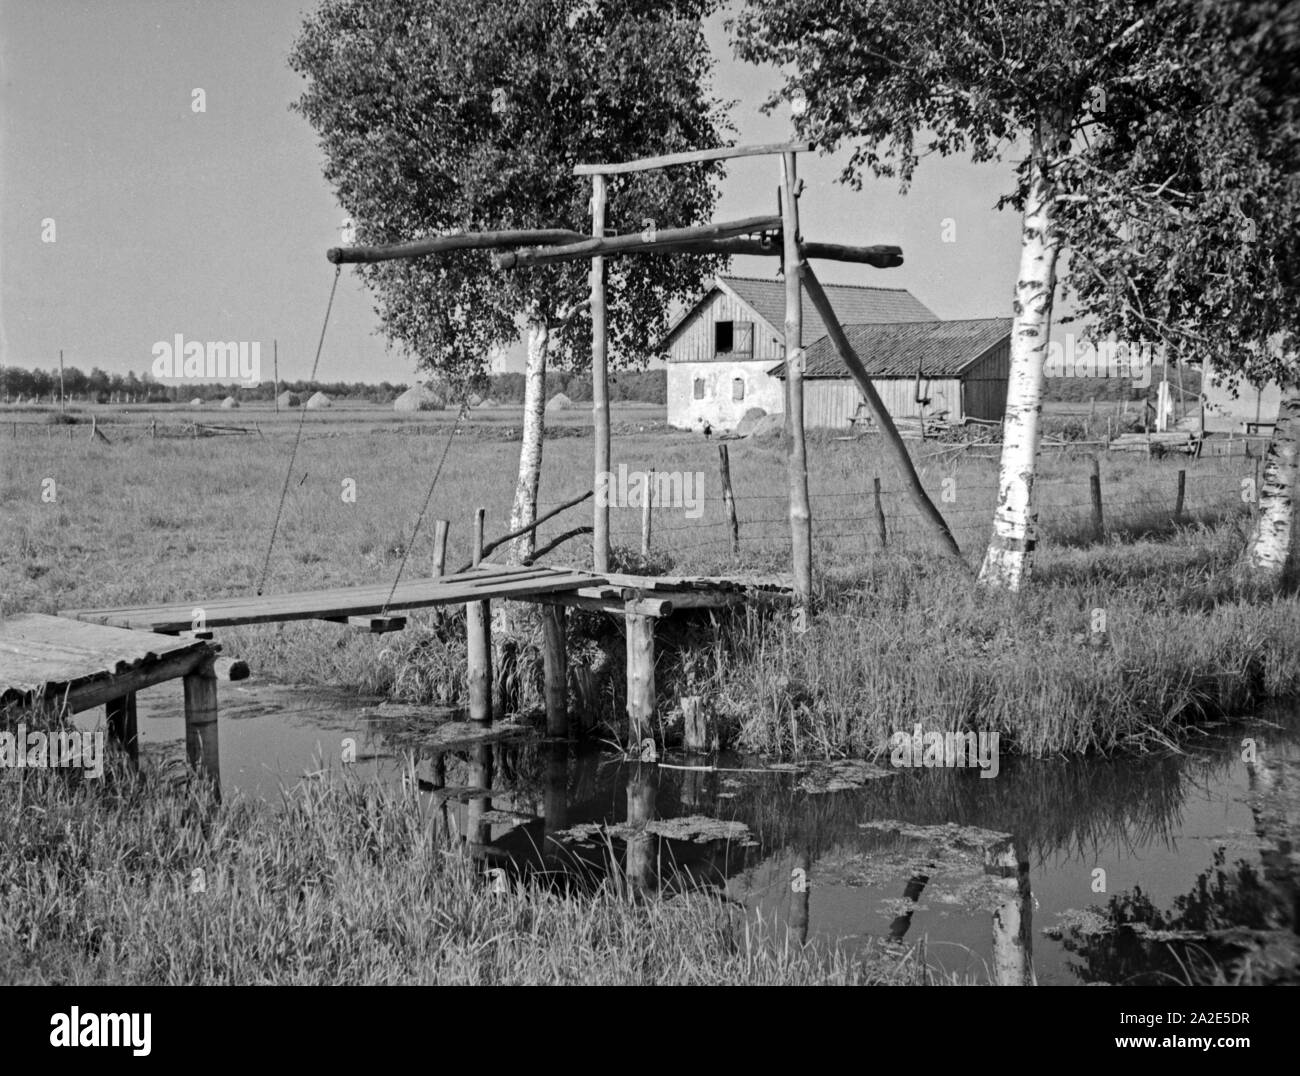 Zugbrücke zur Försterei von Inse im Memeldelta, Ostpreußen, 1930er Jahre. Drawbridge to the forester's house at Inse in the Memel delta, East Prussia, 1930s. Stock Photo